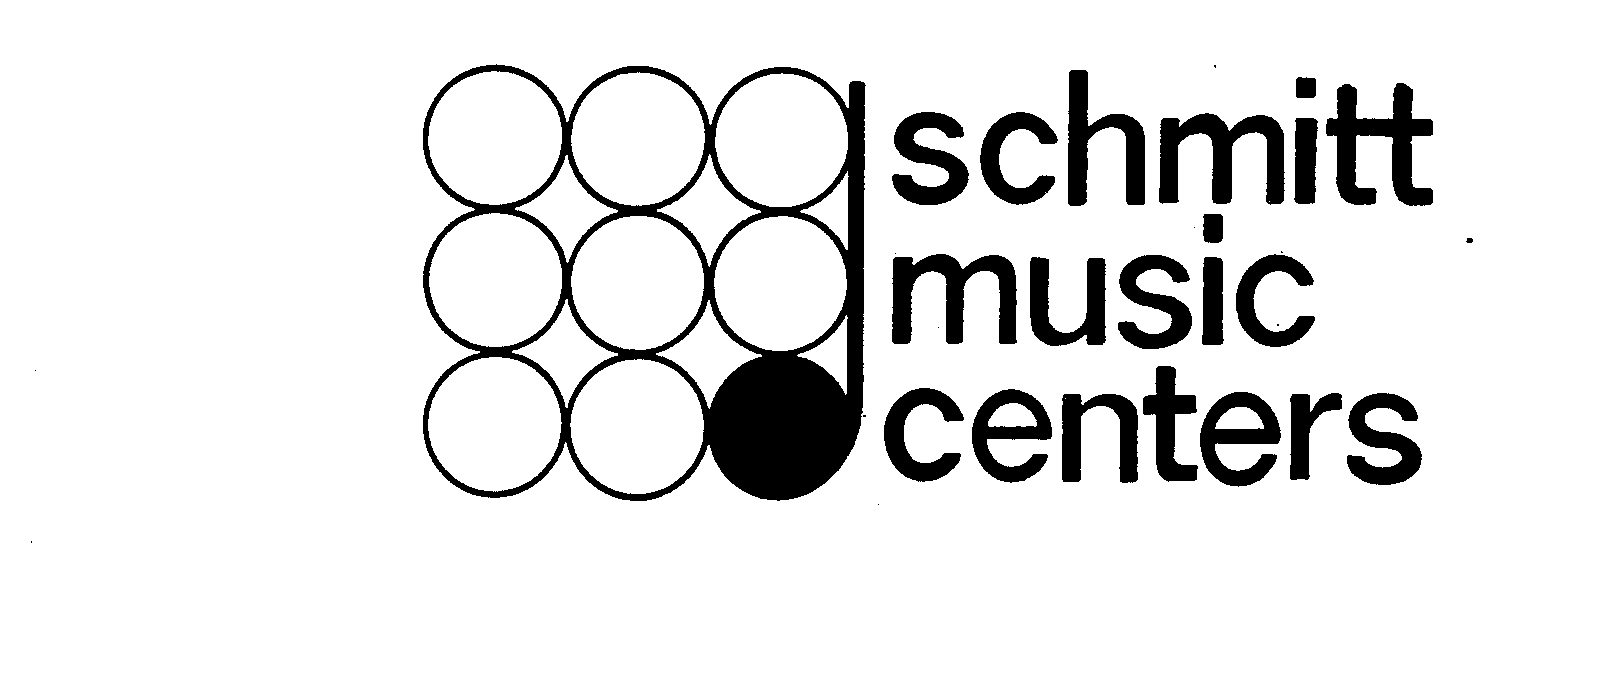 SCHMITT MUSIC CENTERS